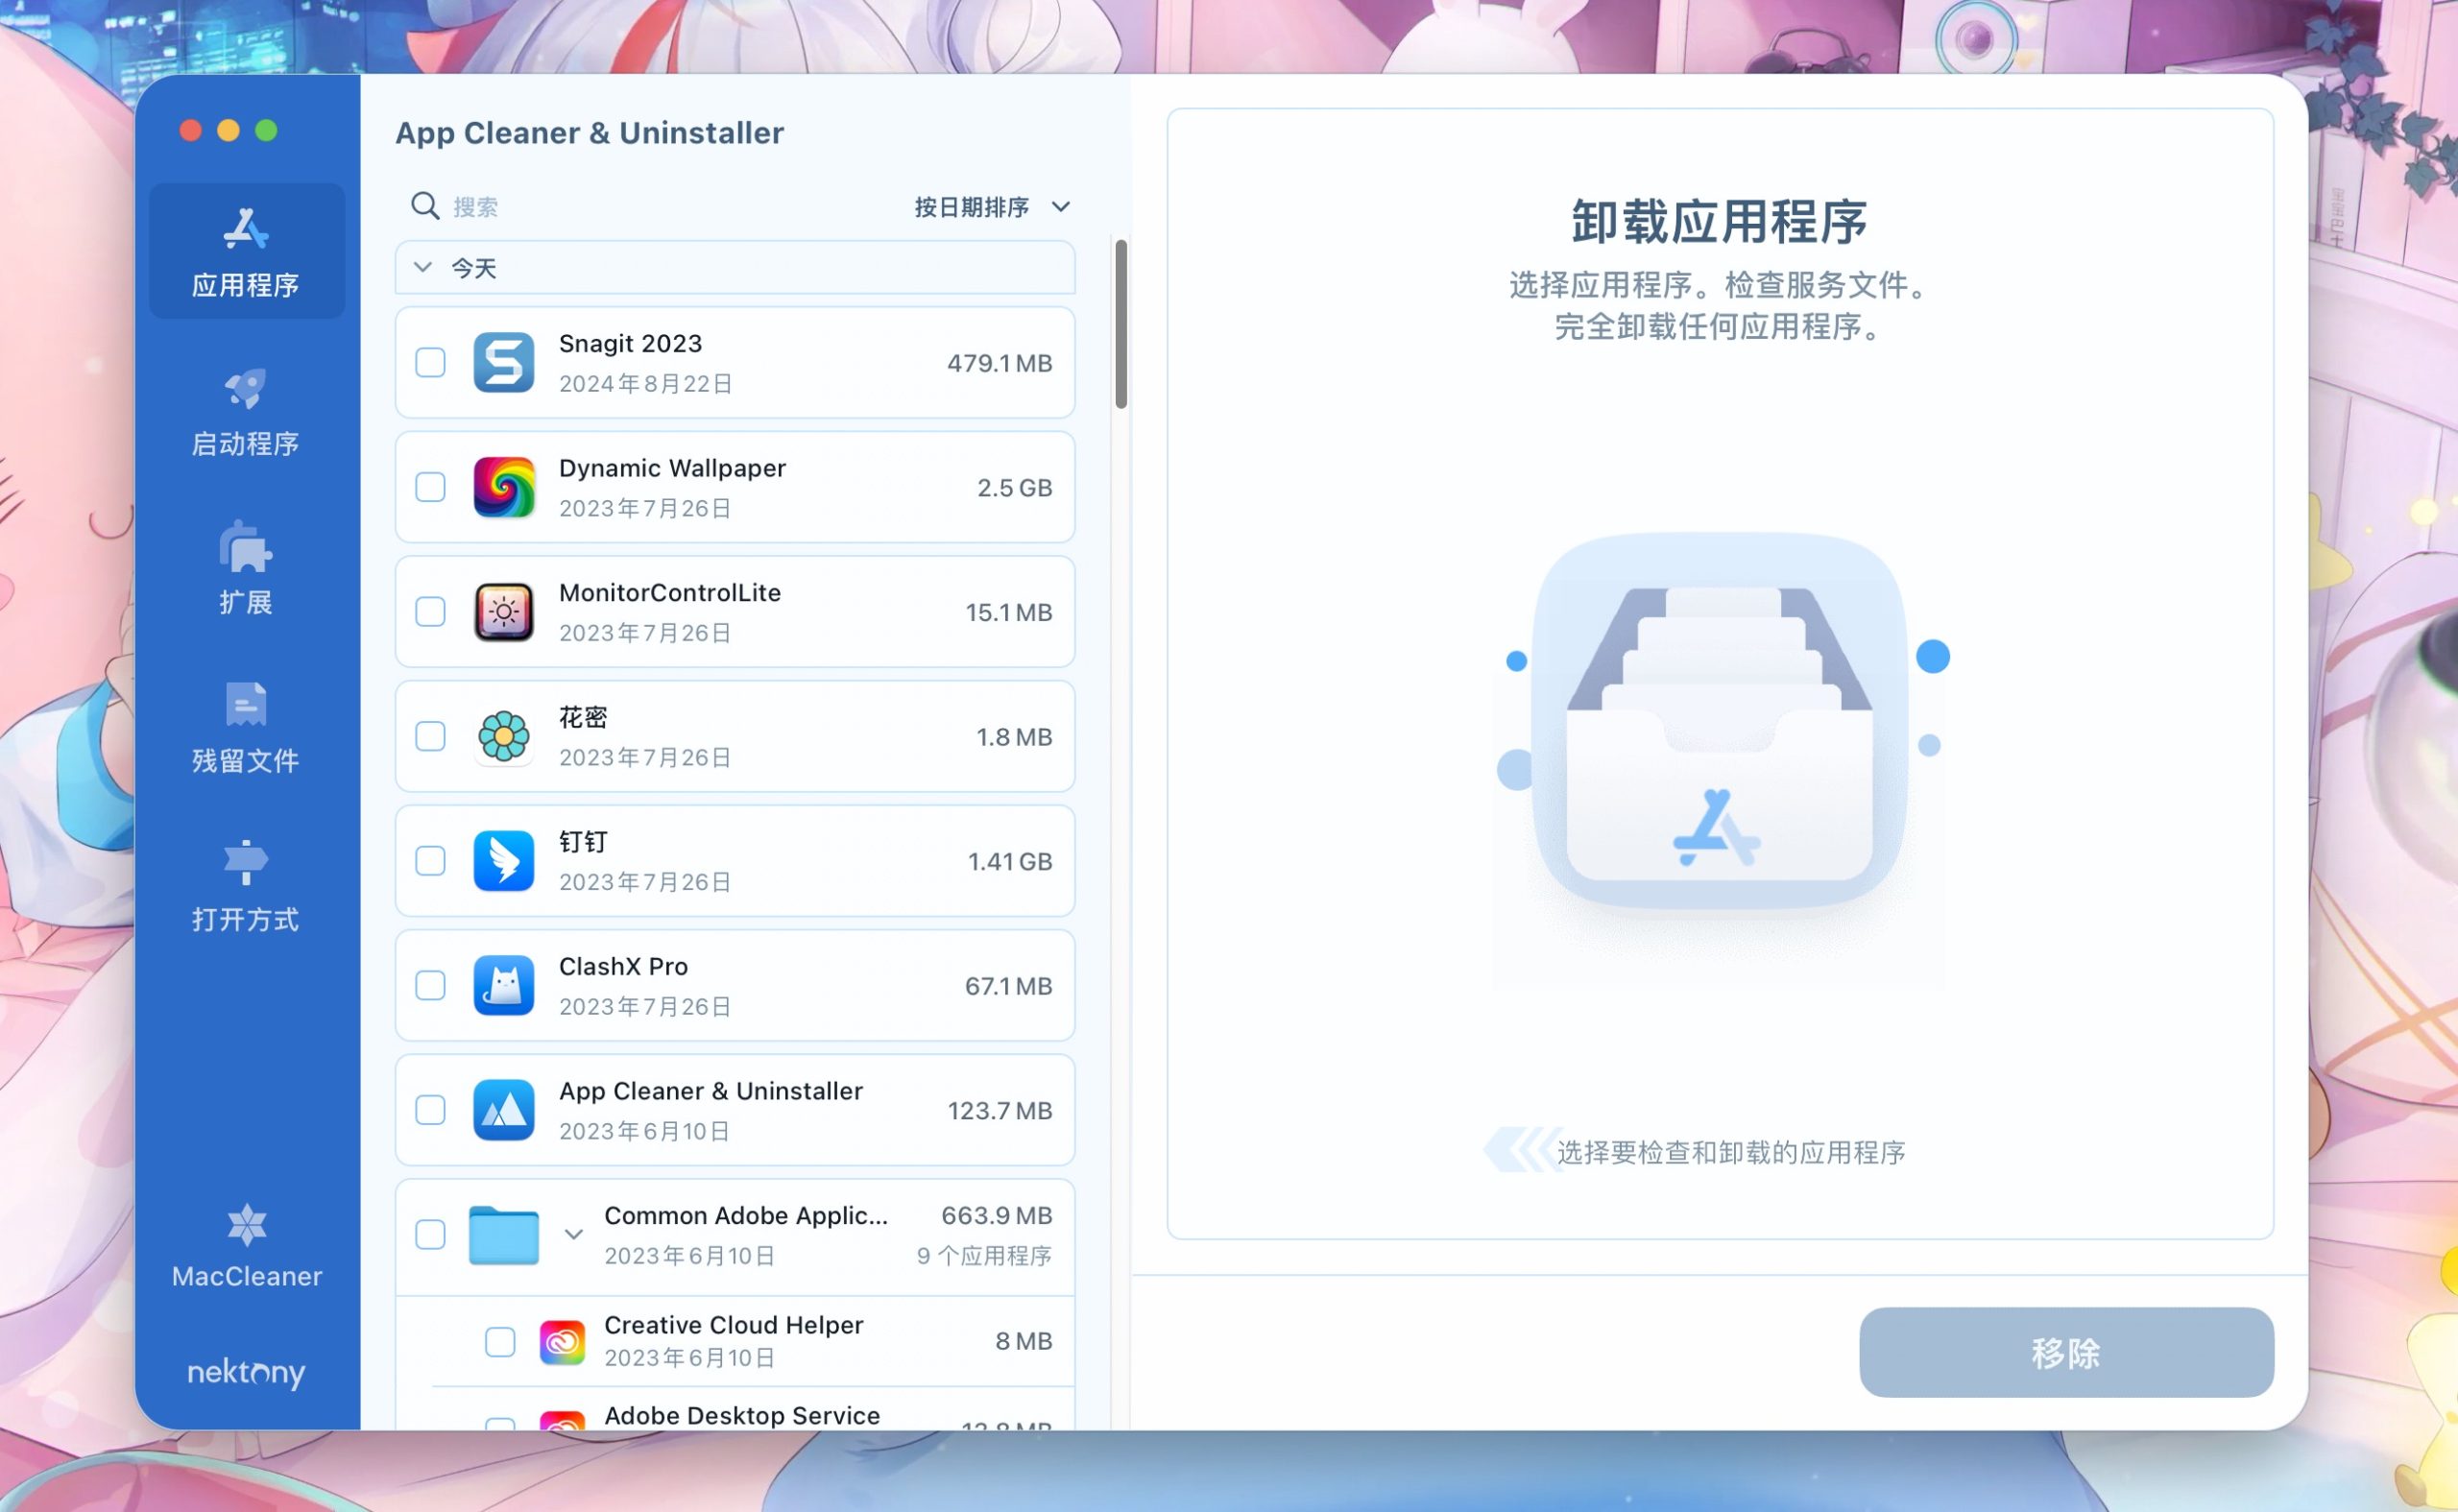 App Cleaner & Uninstaller(mac系统清理和卸载) 8.2.5中文永久使用下载